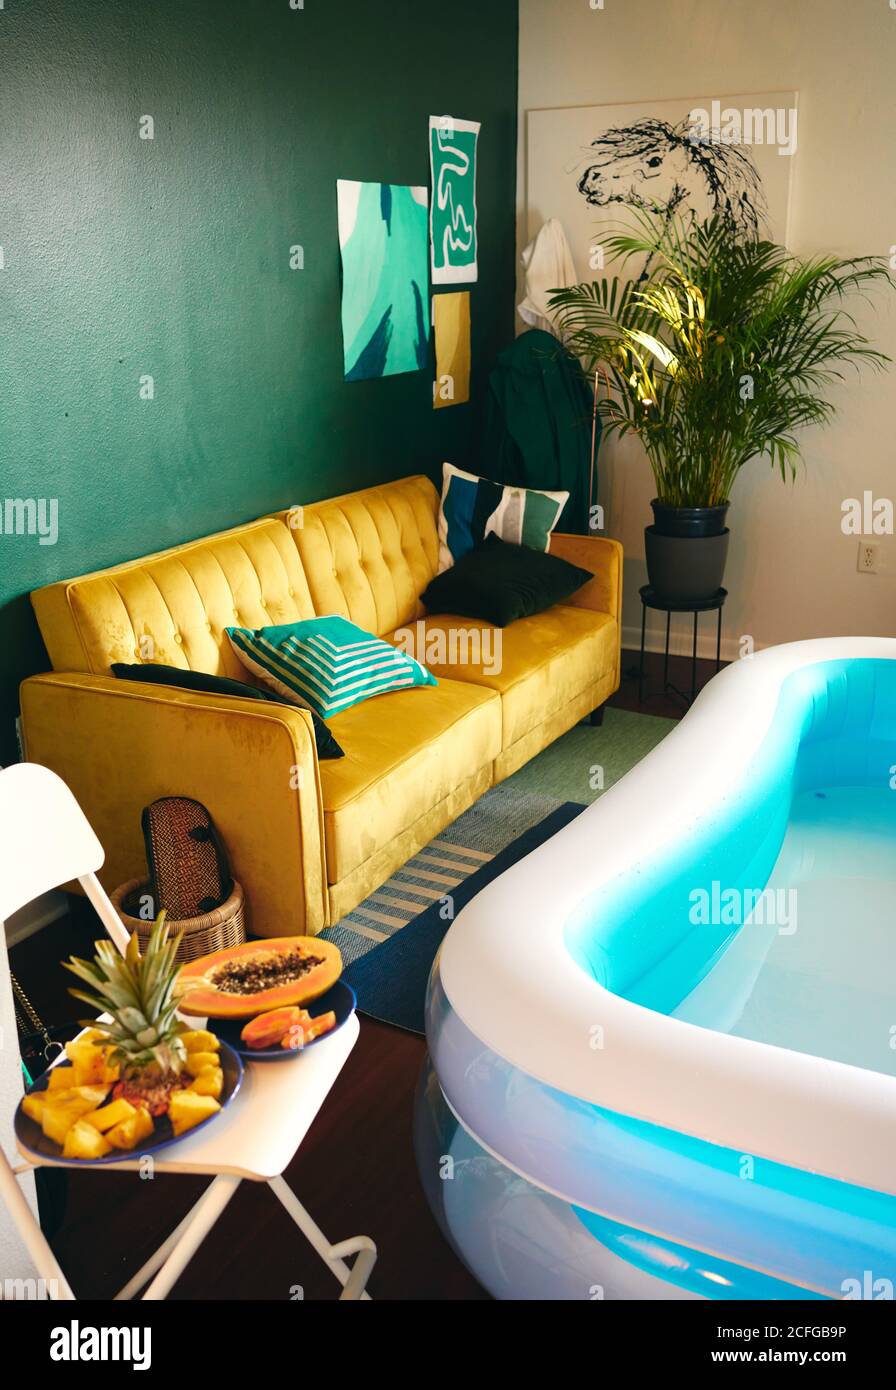 Hoher Winkel der kreativen Wohnung mit aufblasbarem Pool für zu Hause Party und frische tropische Früchte auf Stuhl gelegt Stockfoto